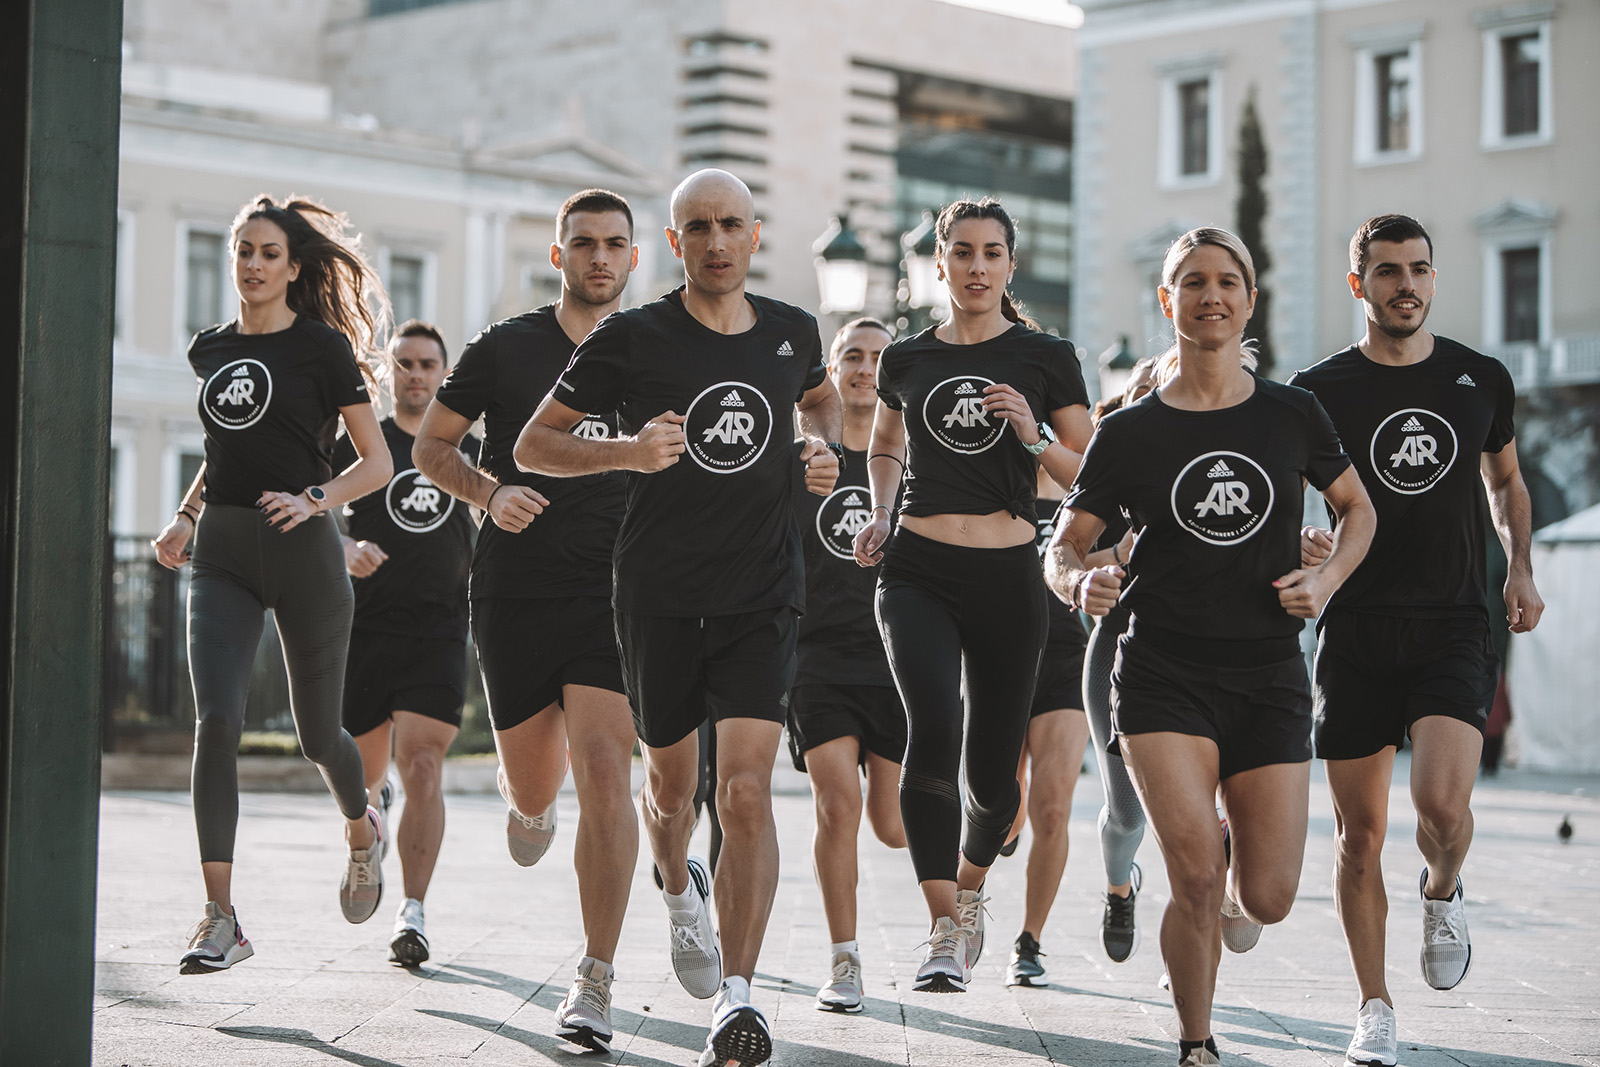 Οι adidas Runners Athens και η INTERSPORT σε προσκαλούν σε νέες running διαδρομές!